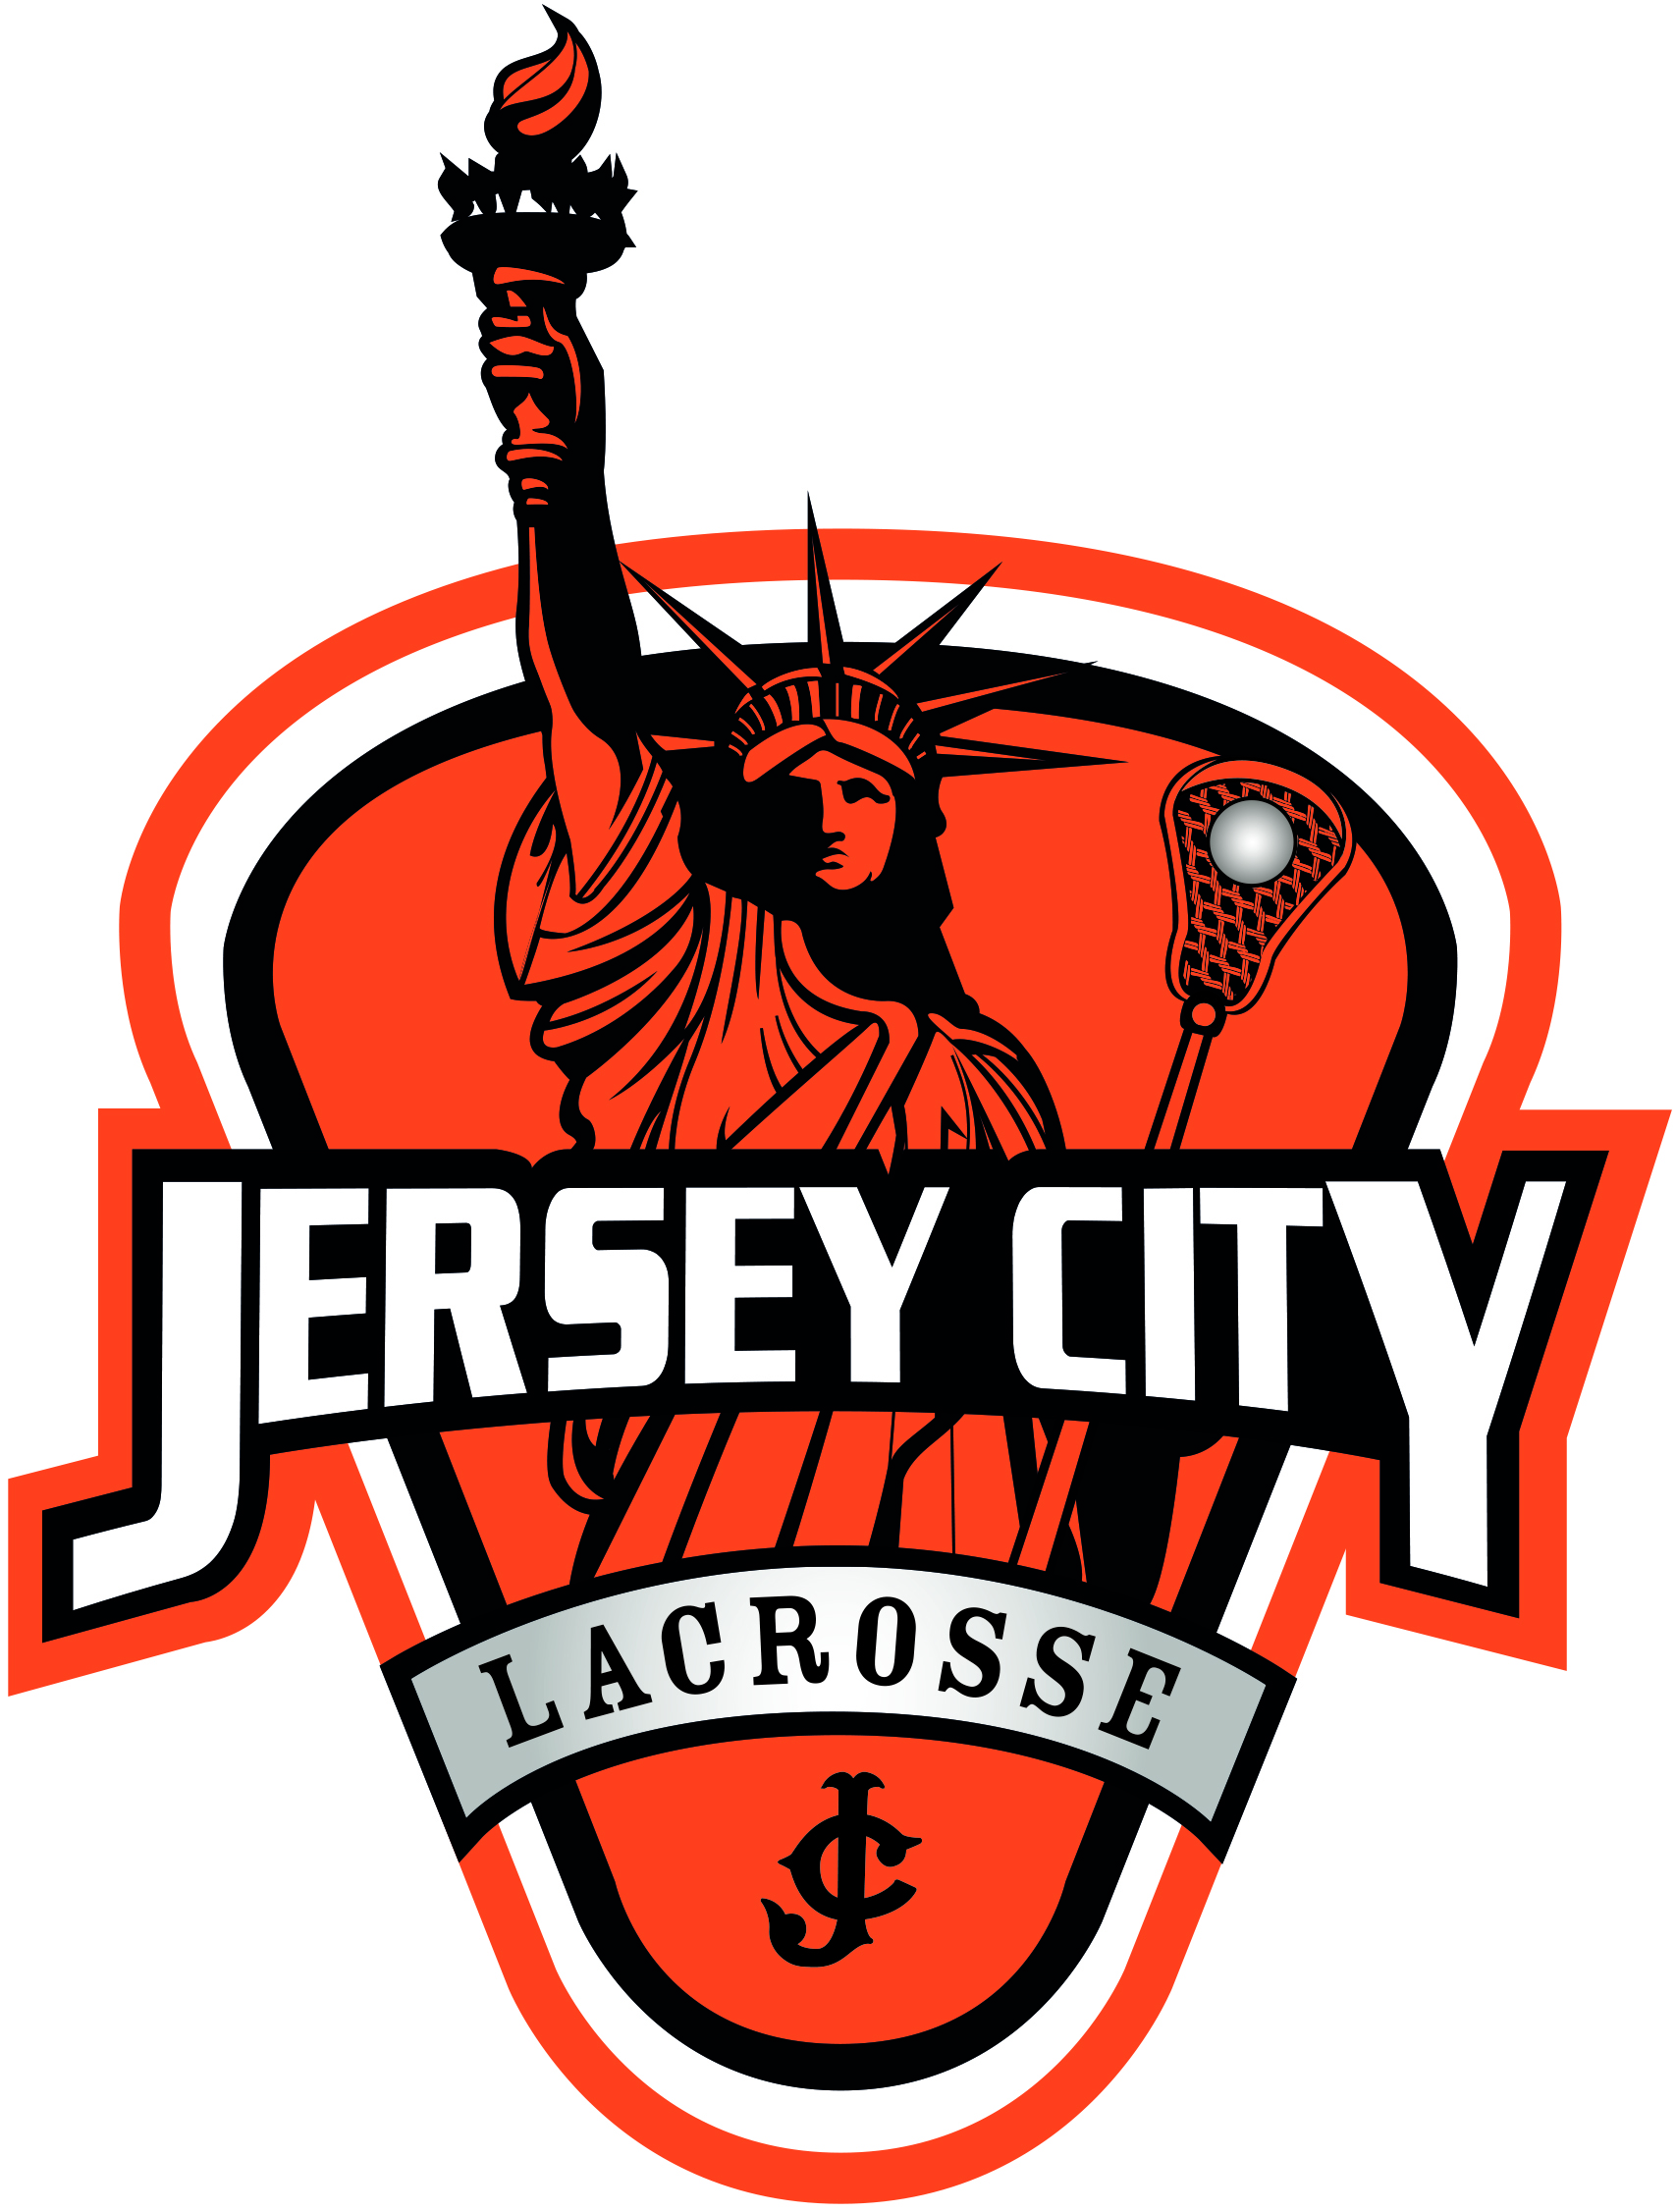 Jersey City Lacrosse